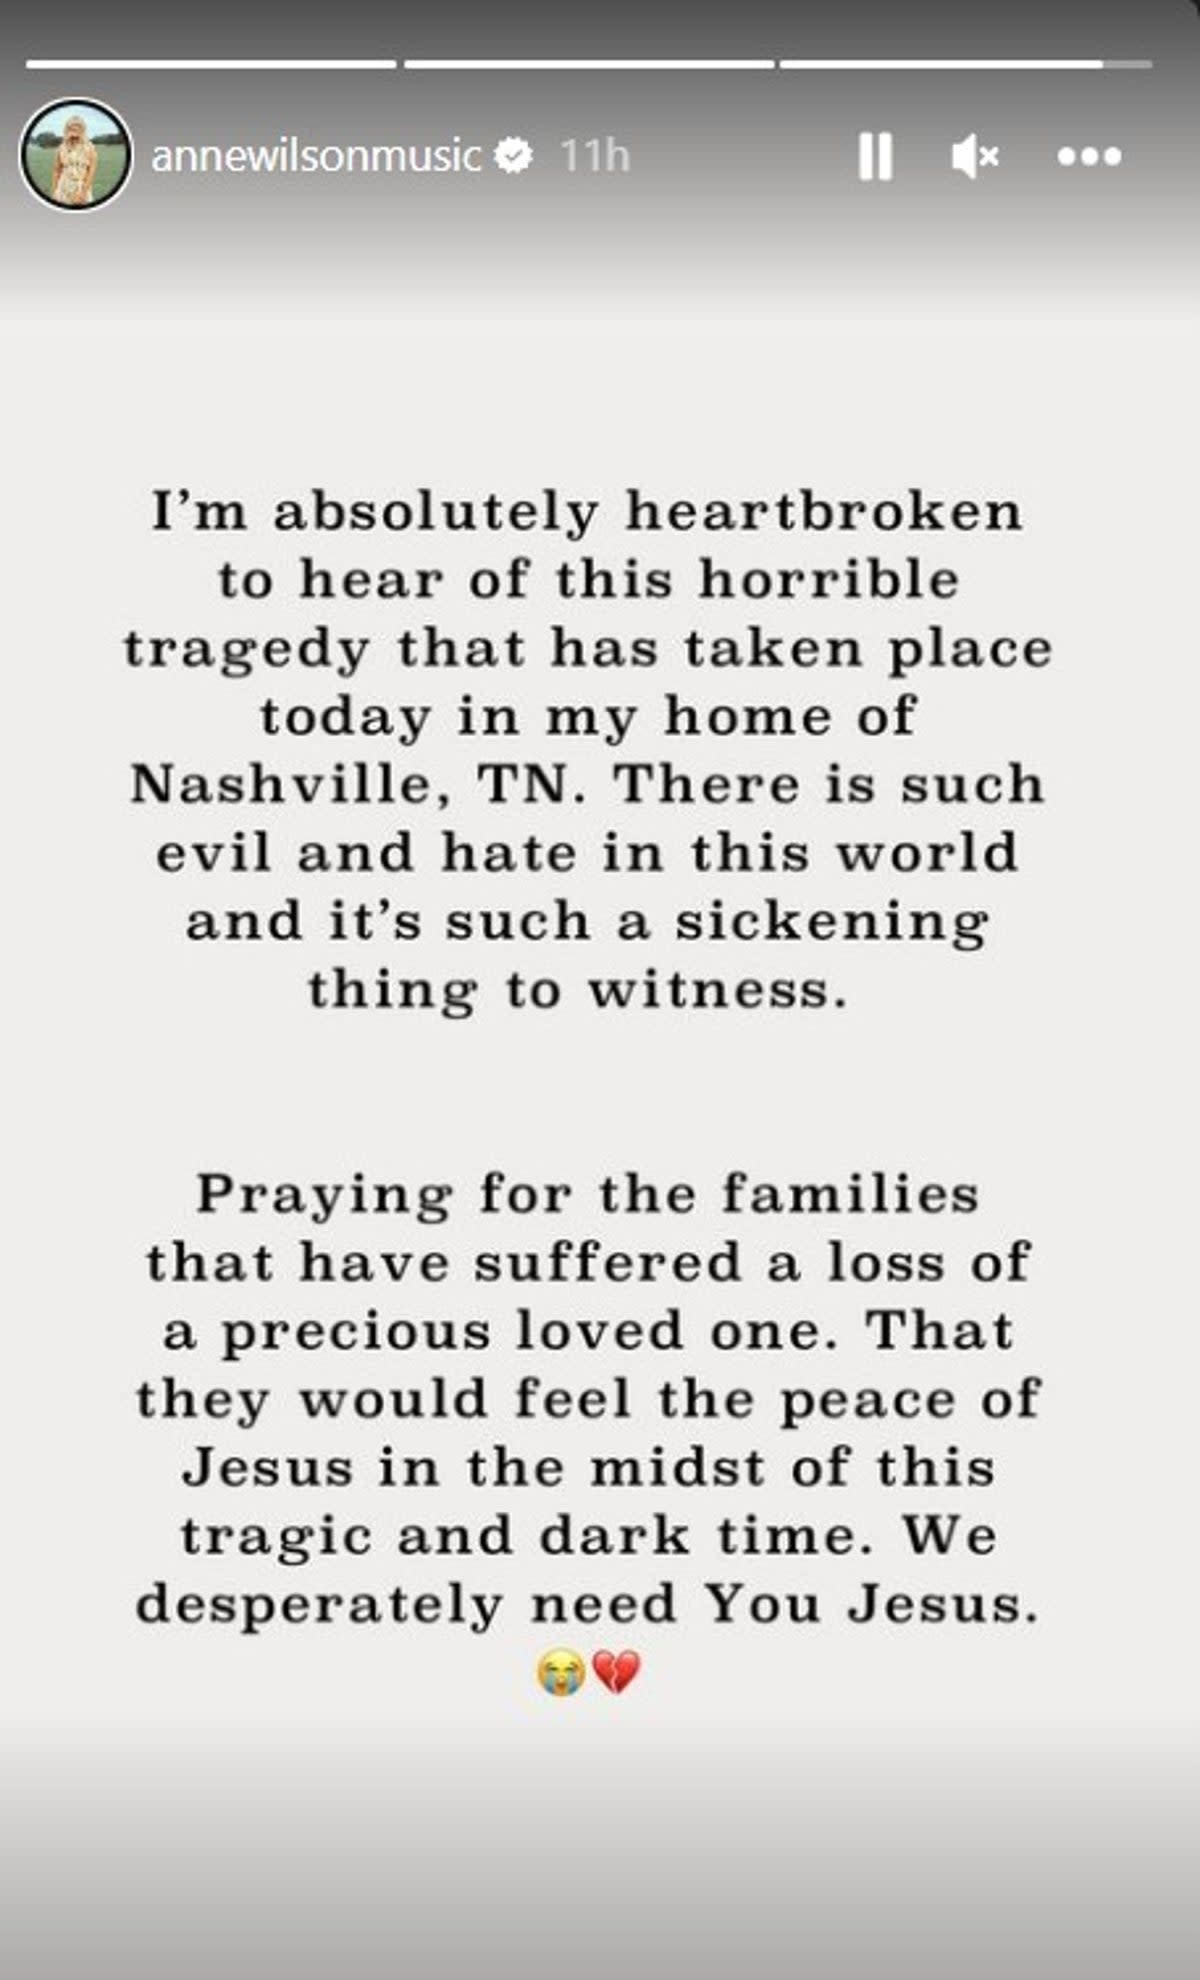 Nashville singer Anne Wilson shares prayers (Instagram)